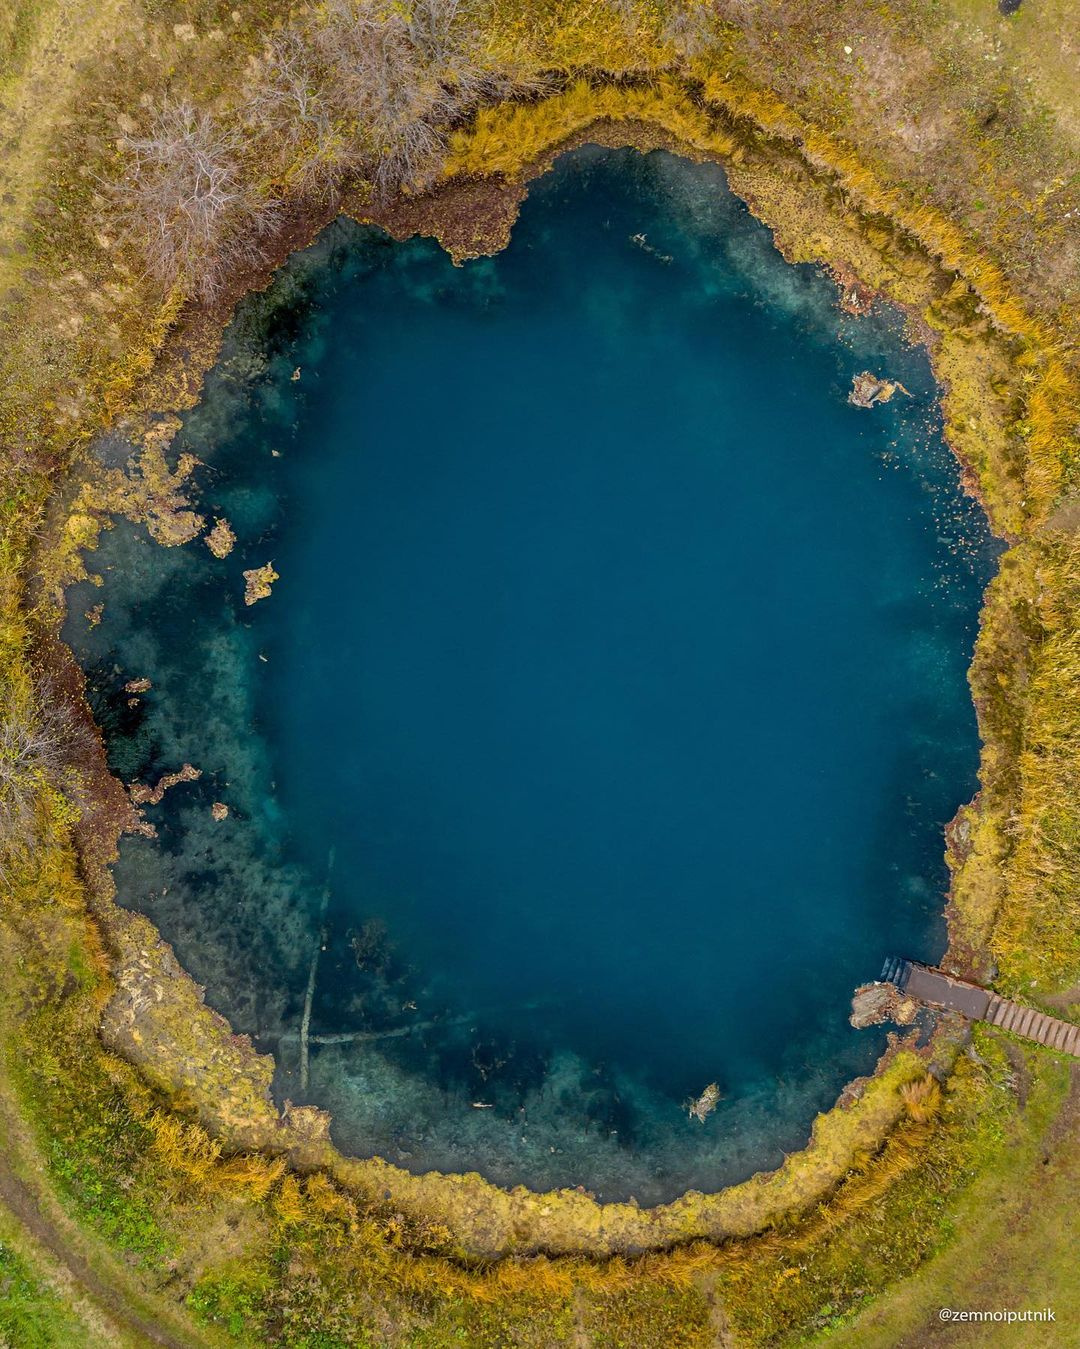 Озеро имеет круглую форму, которая очень хорошо просматривается на фото коптера